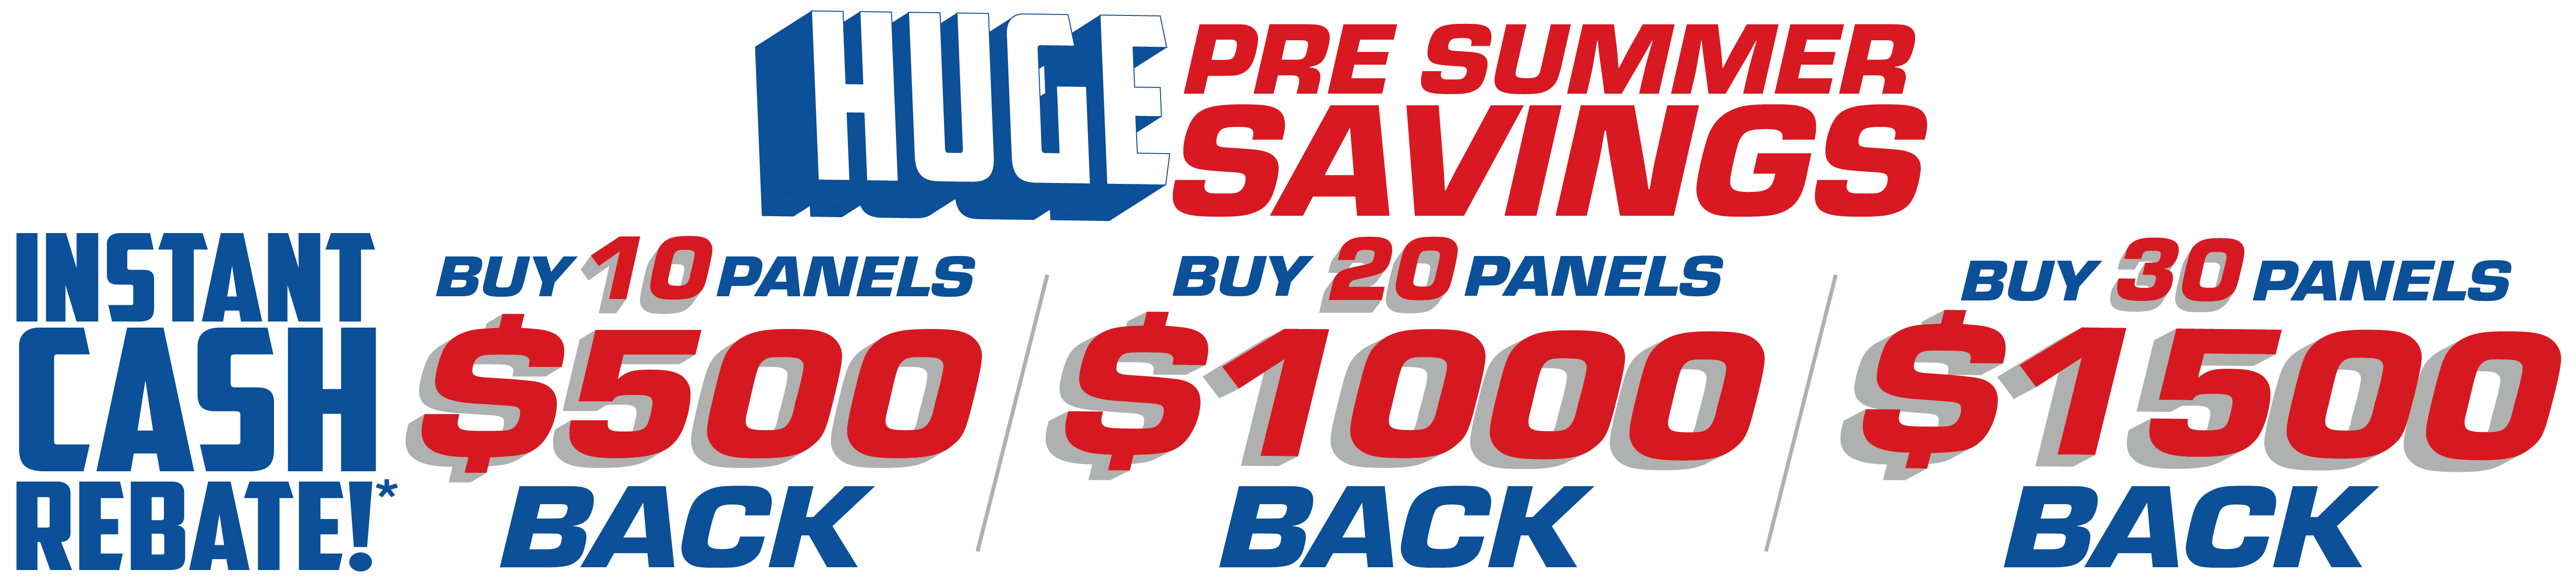 Huge Pre Summers Savings, Instant cash rebate!* Buy 10 Panels get $500 back, Buy 20 Panels get $1000 back, Buy 30 Panels get $1500 back